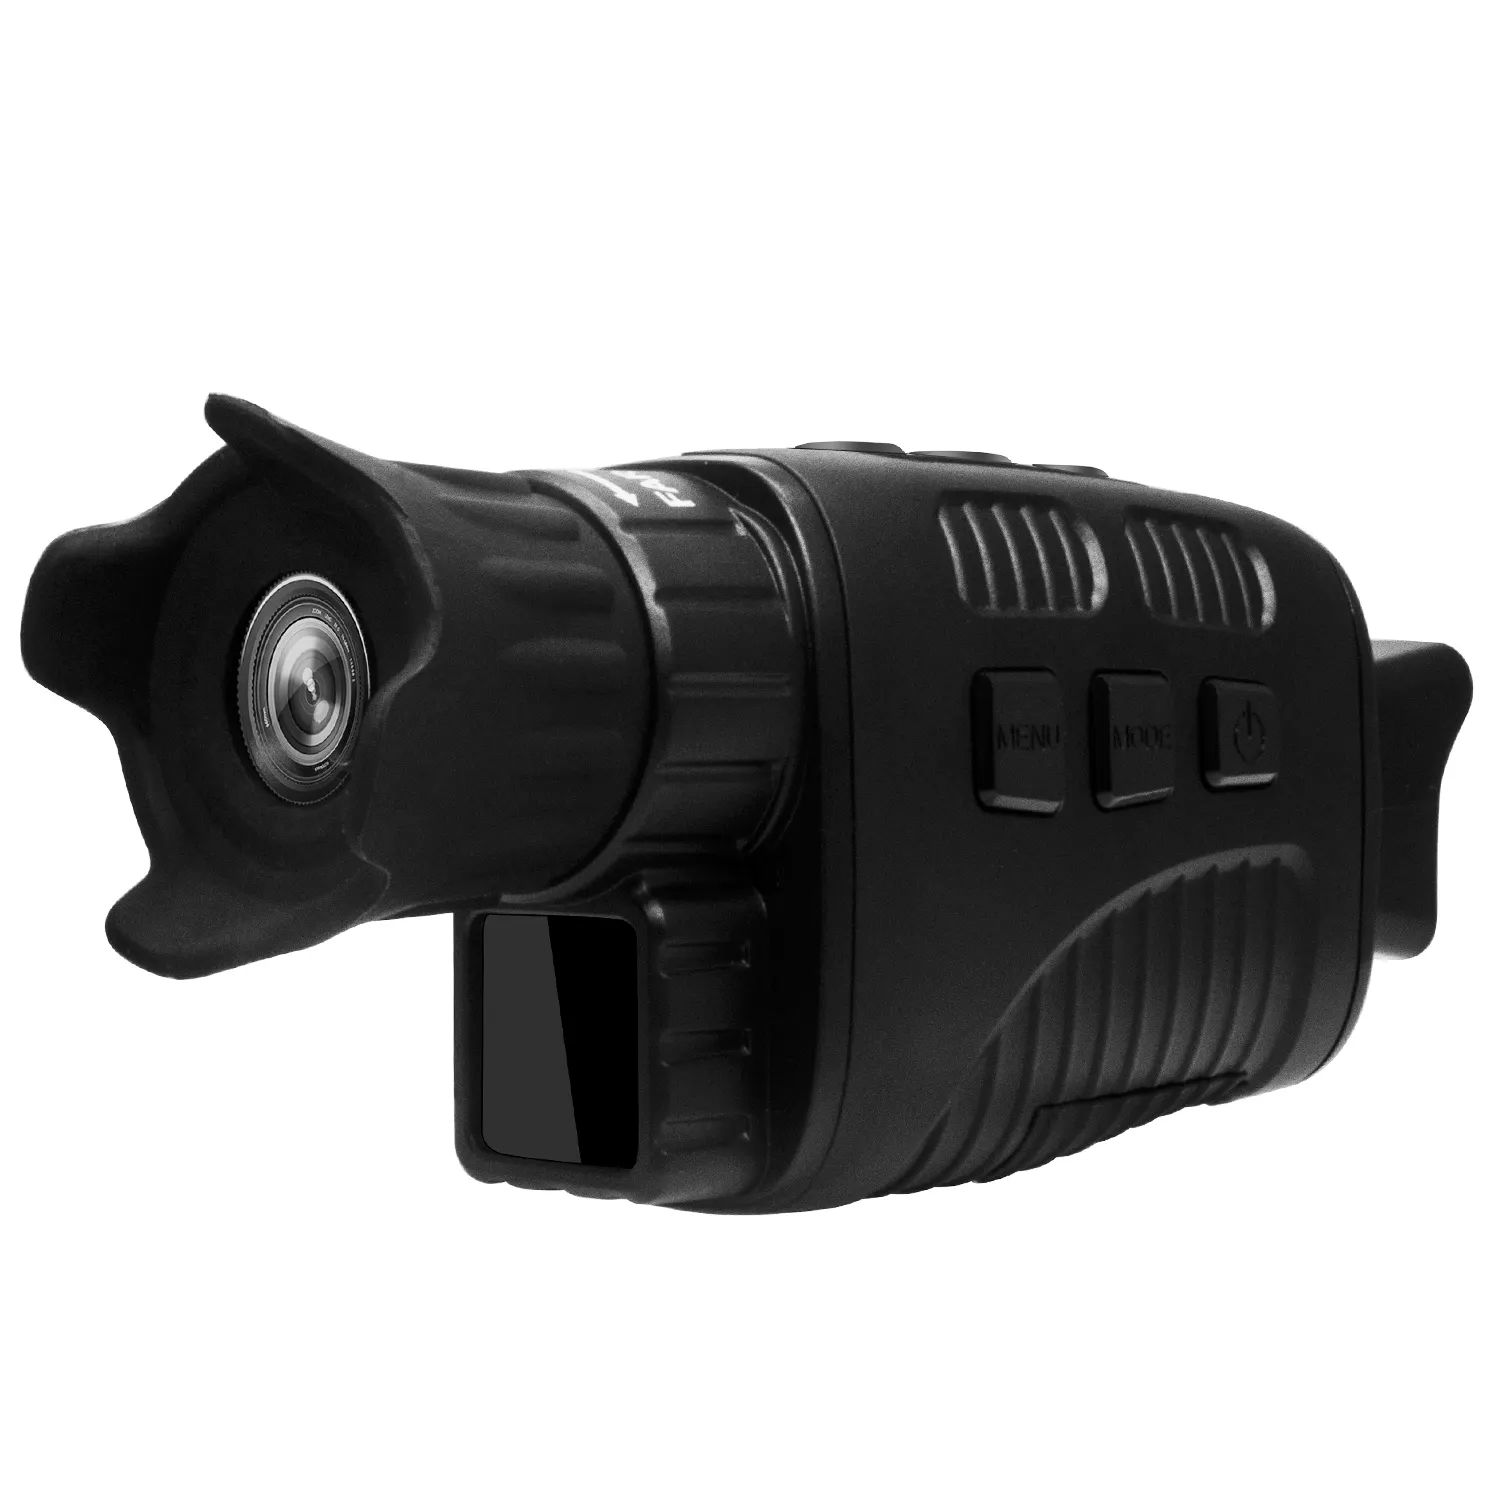 Dispositivo de visión nocturna Digital de foto y vídeo HD portátil, detección de infrarrojos al aire libre, binocular, monocular, instrumento de visión nocturna